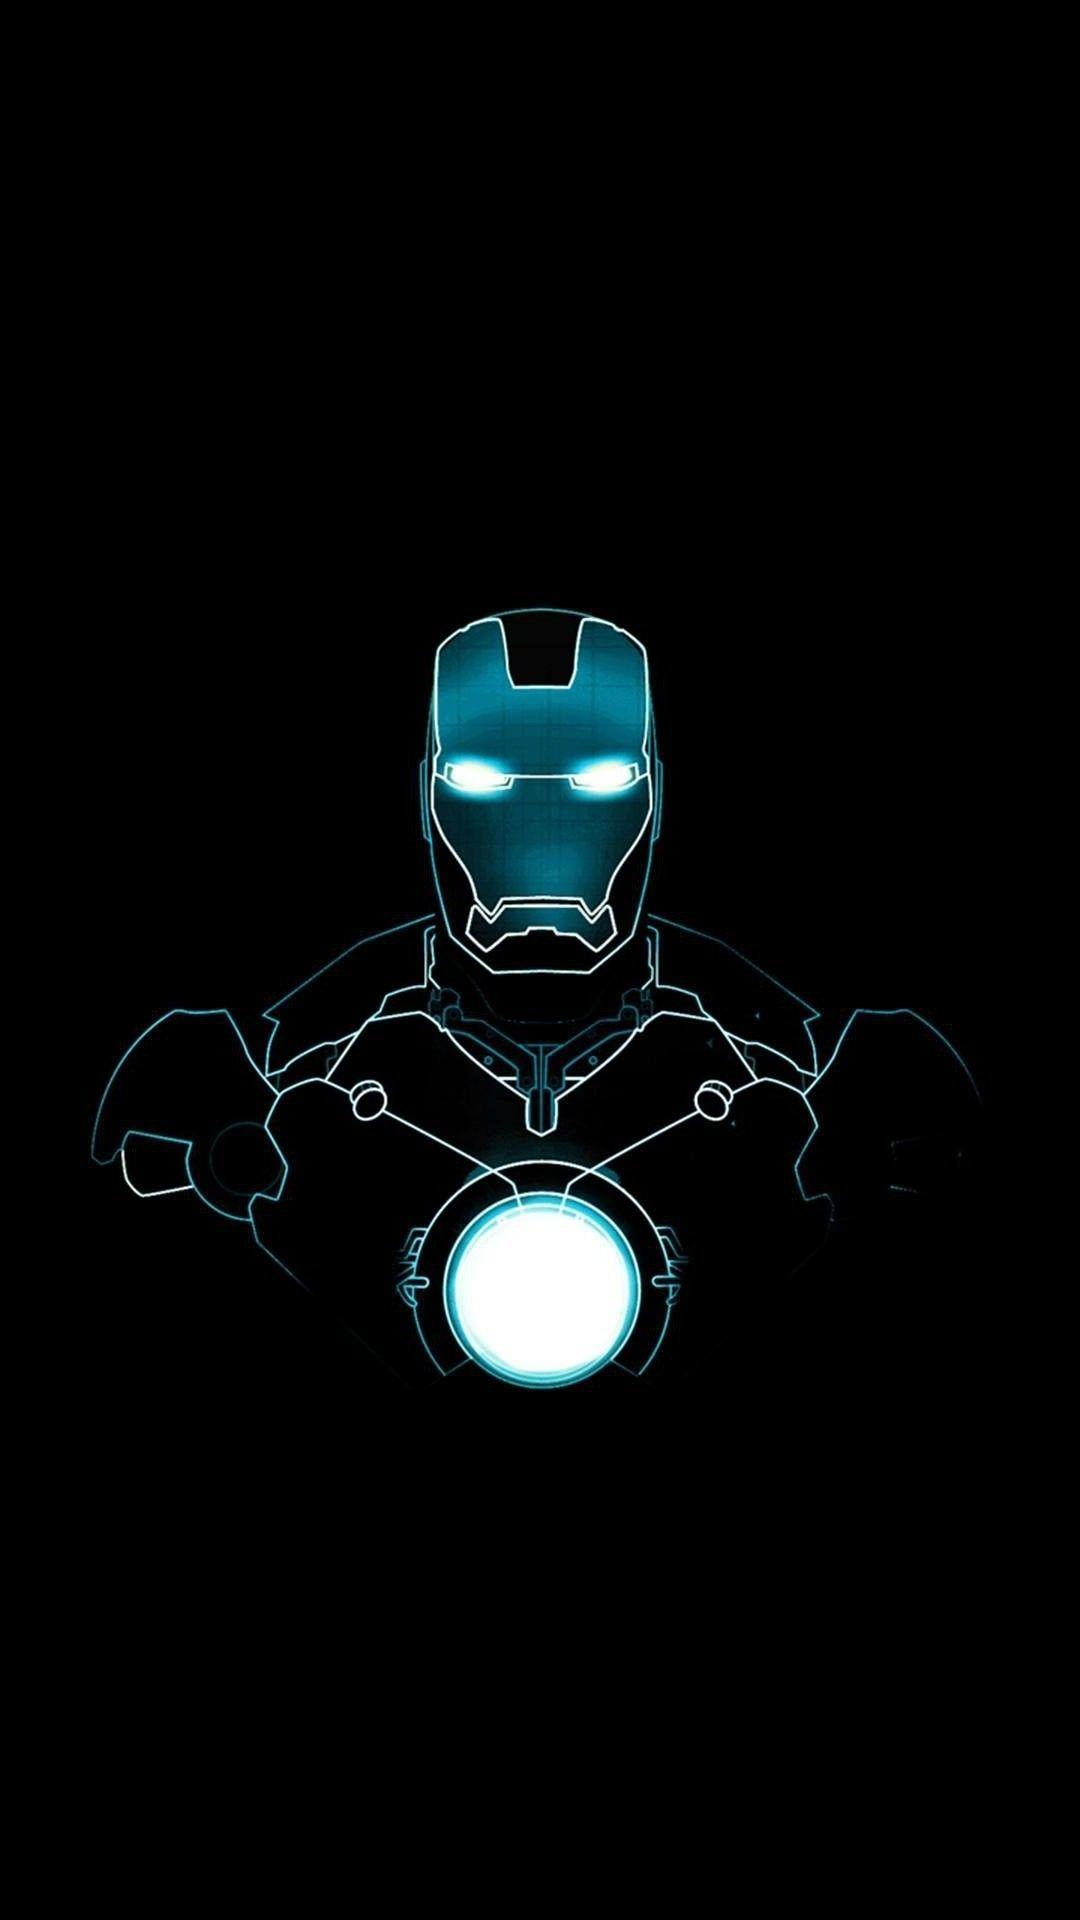 Nếu bạn là fan của siêu anh hùng Iron Man, hãy nhấn vào hình ảnh này để xem hình nền Iron Man 4K cho iPhone. Với chất lượng hình ảnh tuyệt vời, bạn sẽ không thể rời mắt khỏi màn hình iPhone của mình!